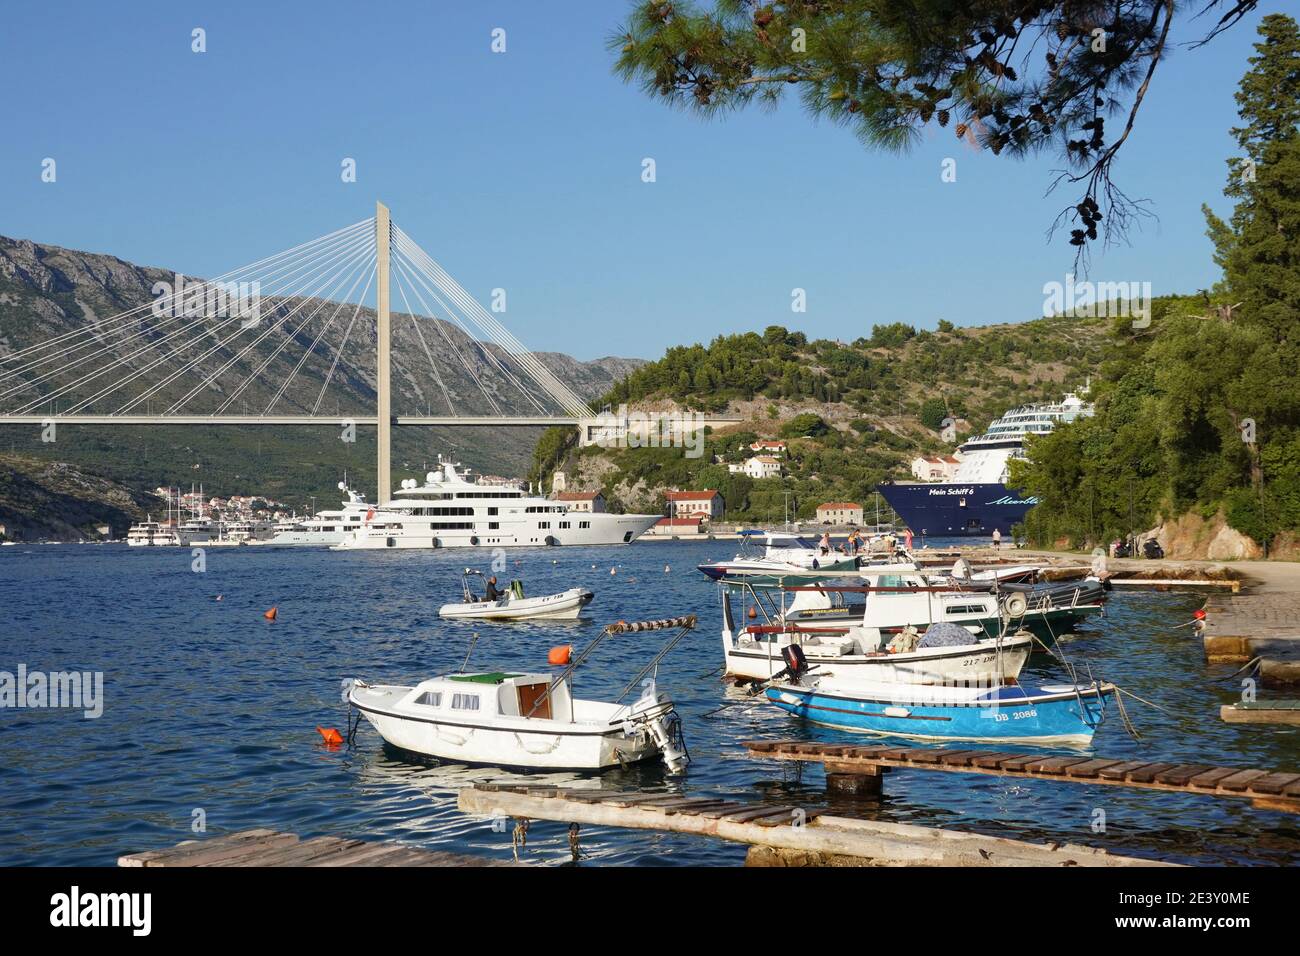 Croatie, Dubrovnik: Port de Gruz. Au fond du pont télécâblé Franjo Tudman, le bateau de croisière Mein Schiff 6 (295 mètres, 15 ponts et près) Banque D'Images